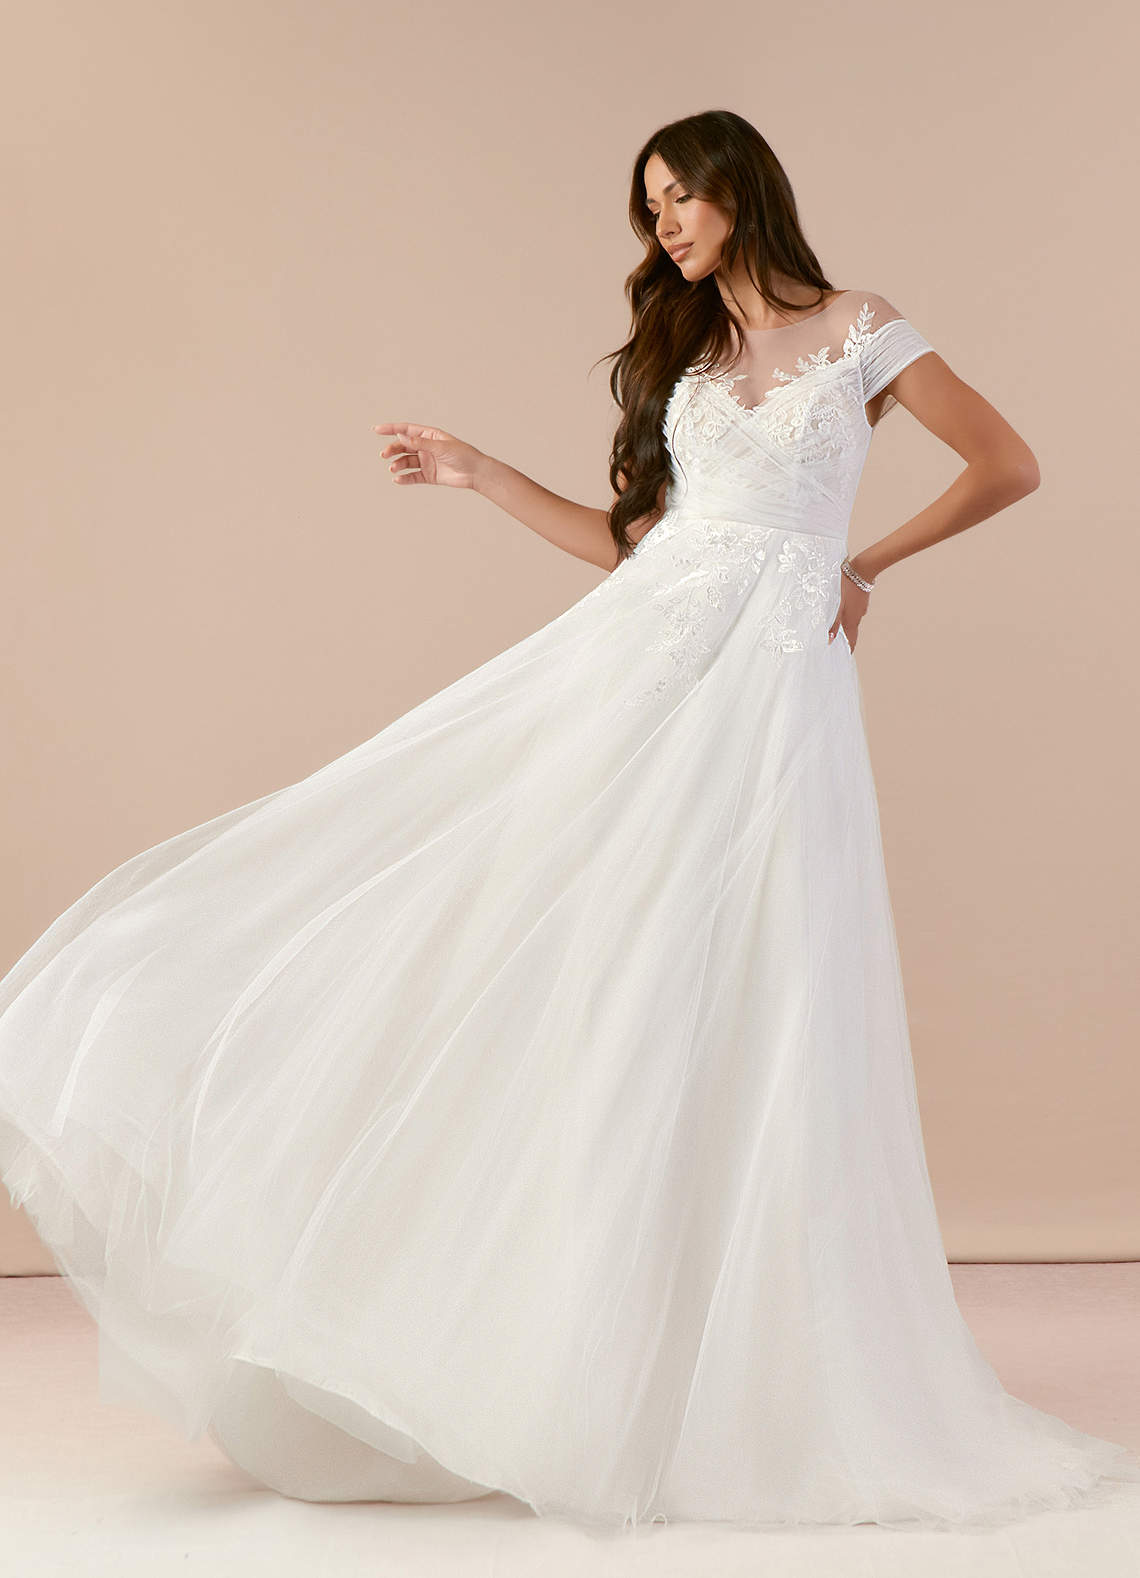 Lace Wedding Dresses & Gowns丨Azazie